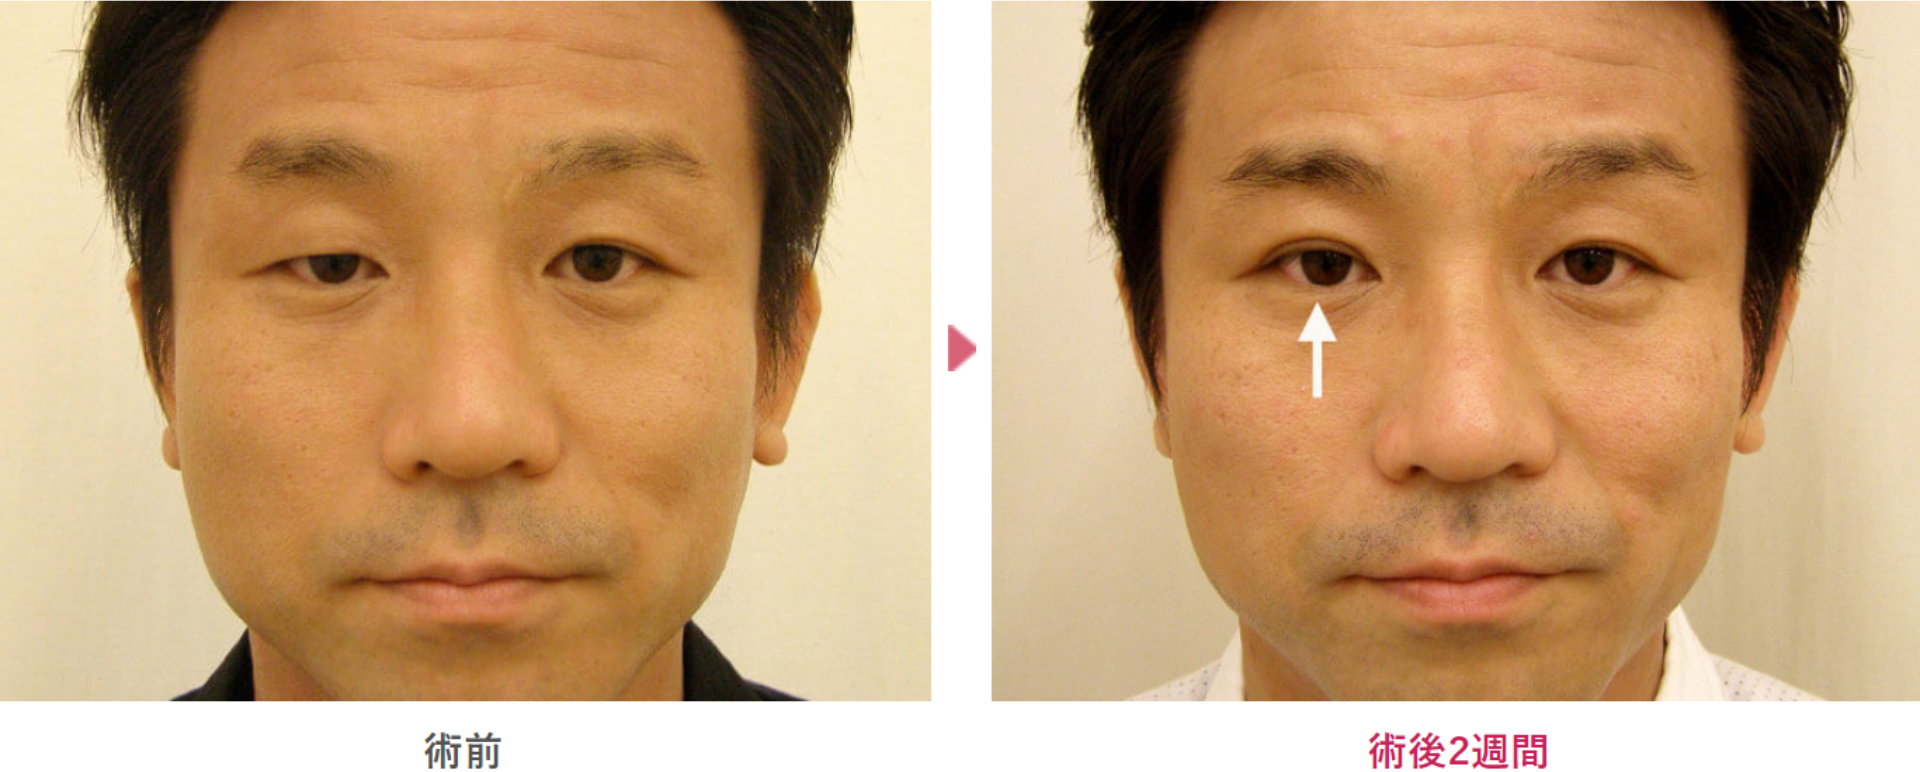 先天性眼瞼下垂の術前と術後2週間の見た目の変化を表す症例写真